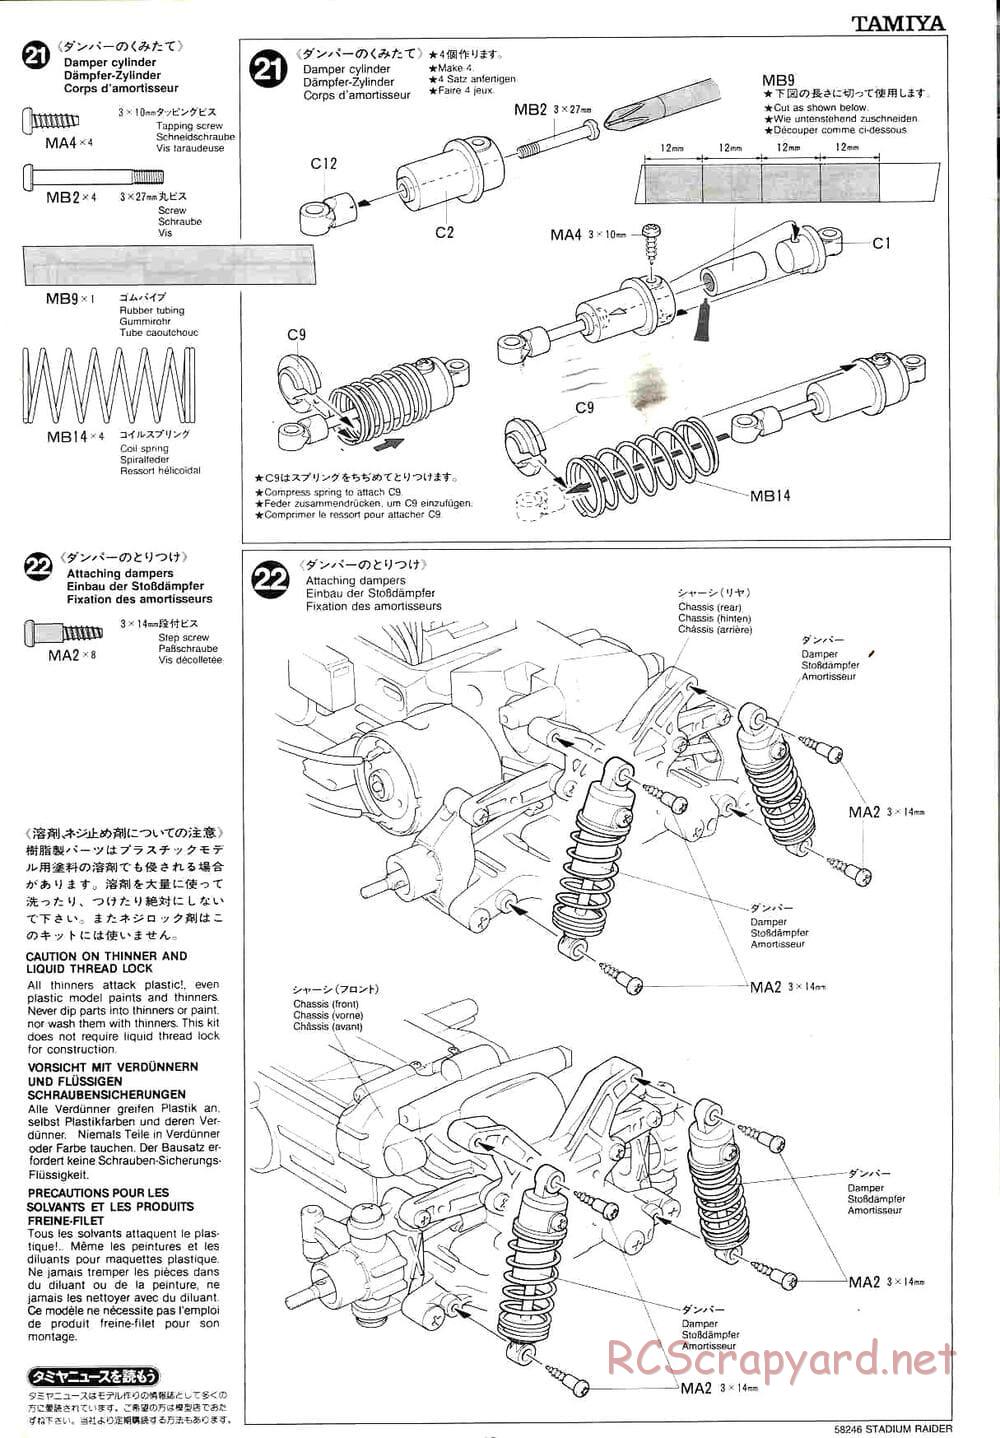 Tamiya - Stadium Raider - TL-01 Chassis - Manual - Page 13